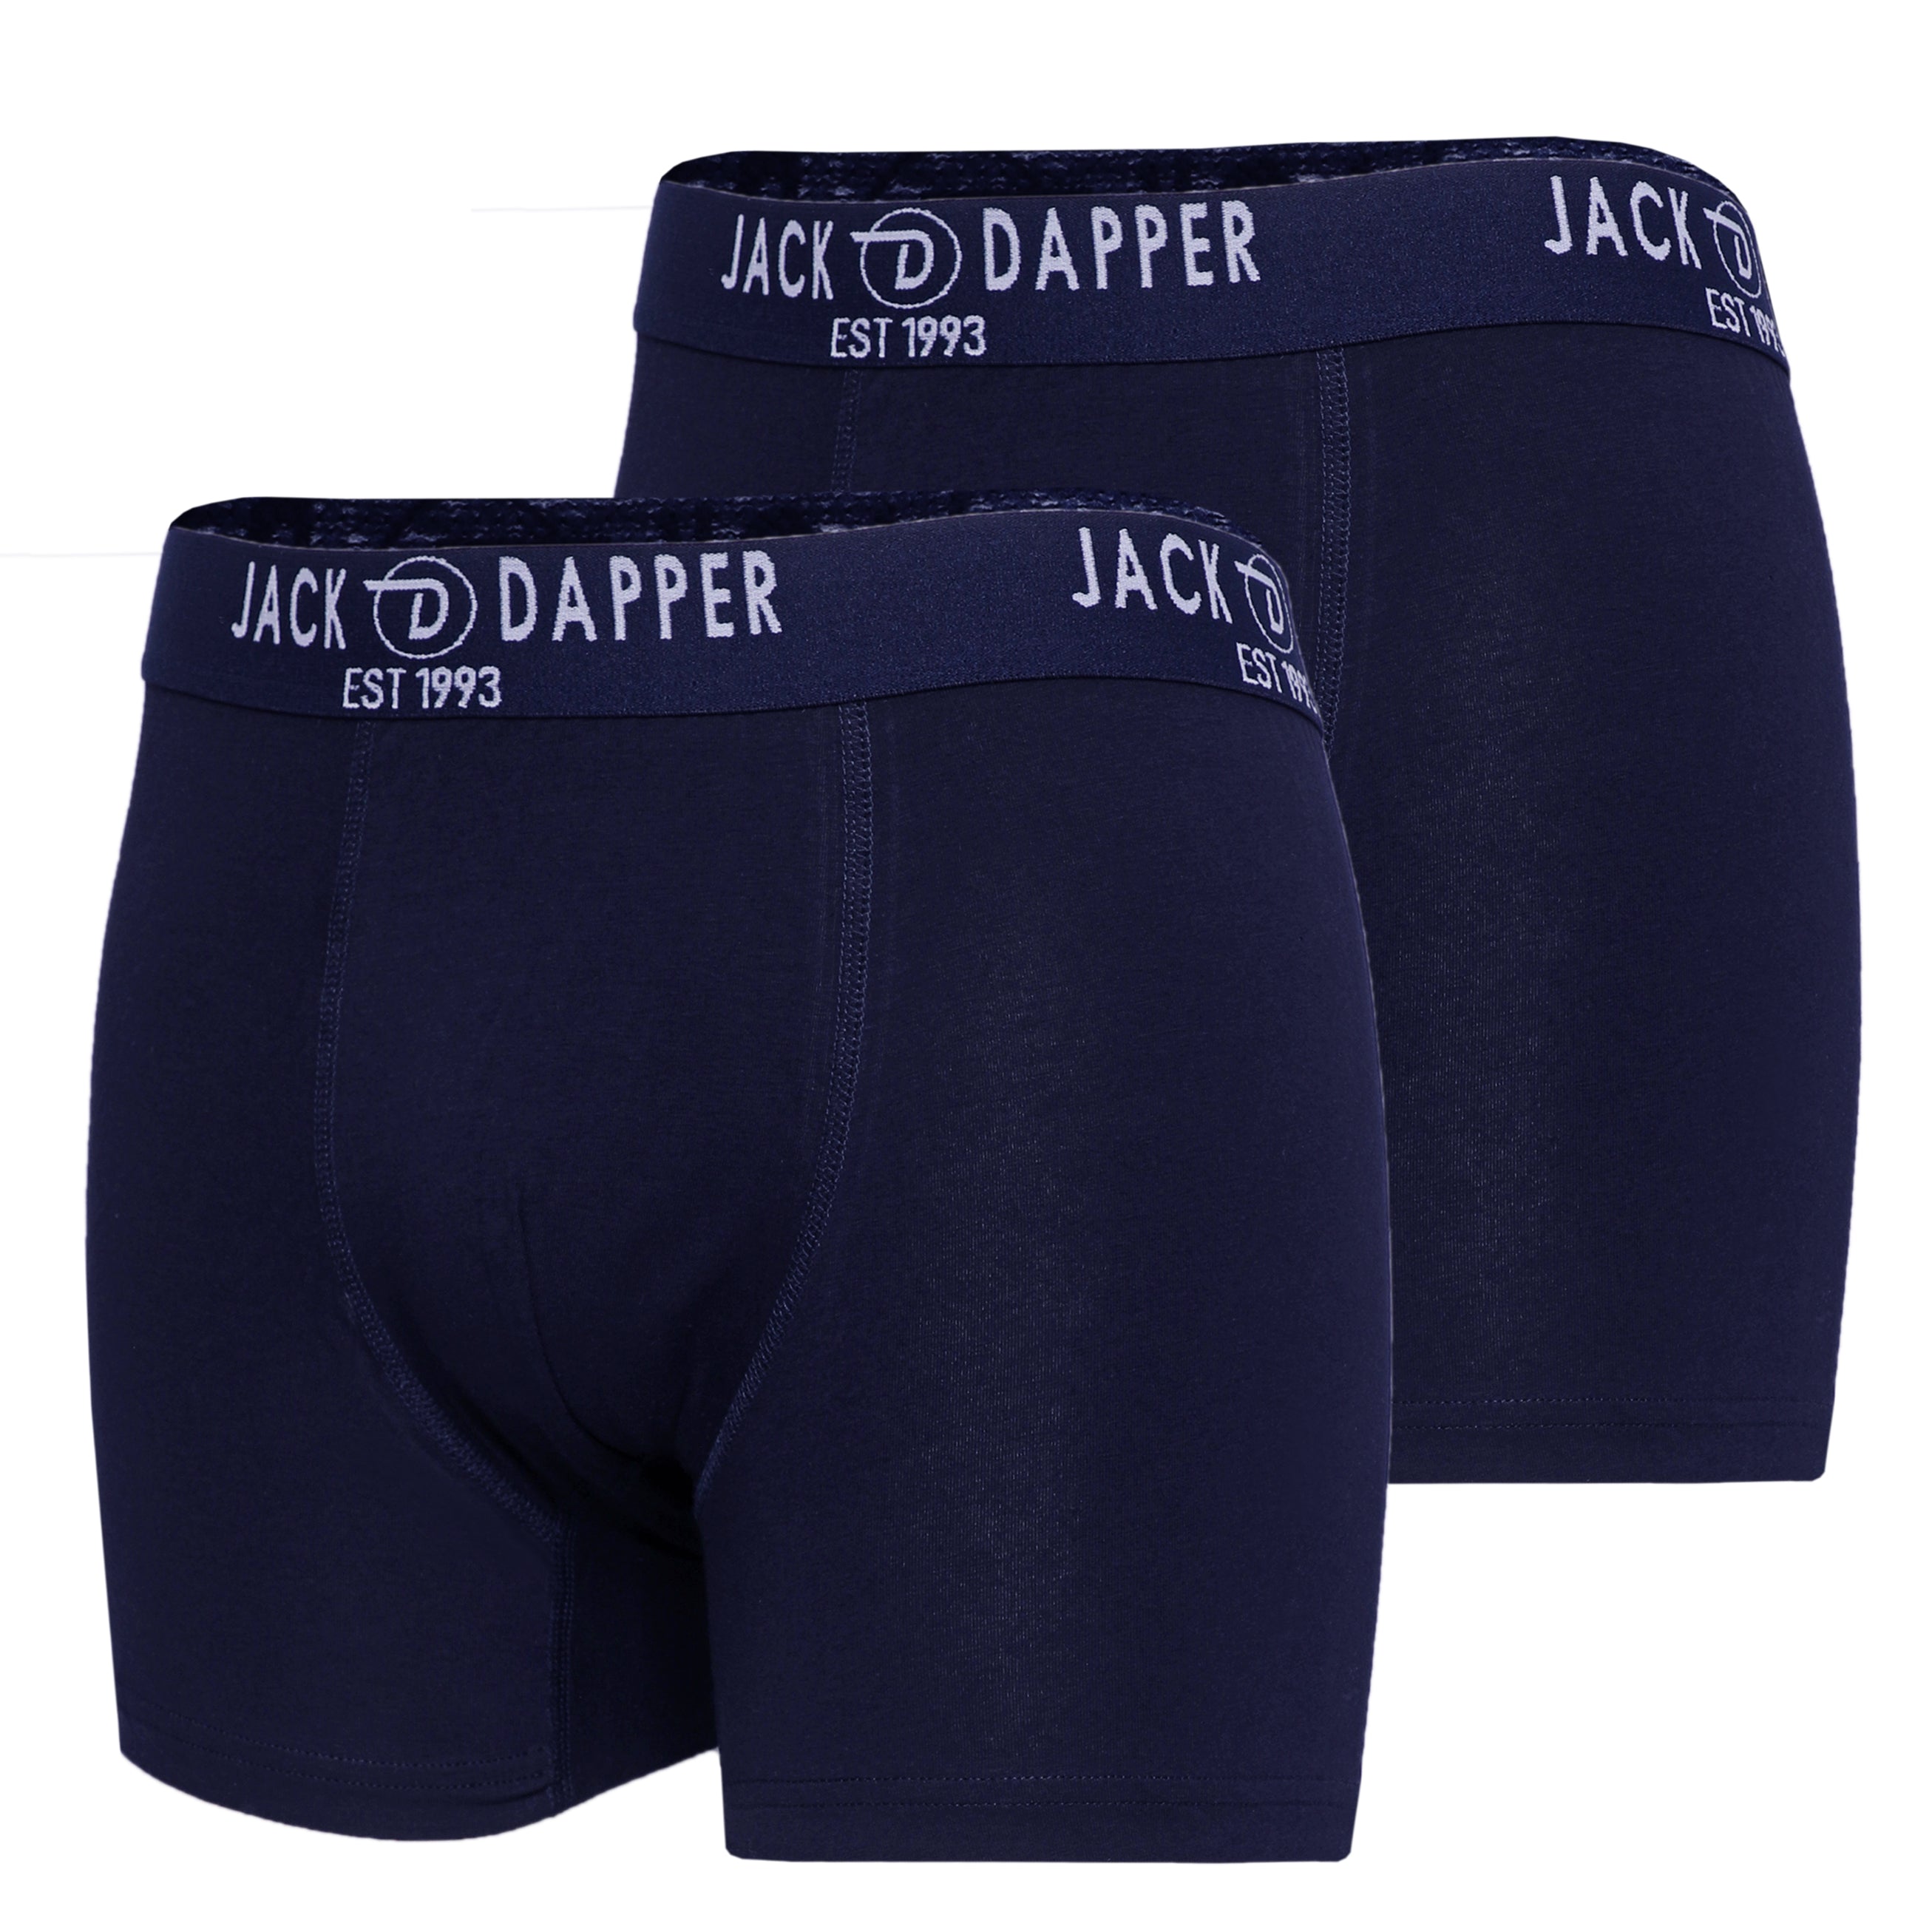 Jack Dapper Navy 2-Piece Cotton Underwear